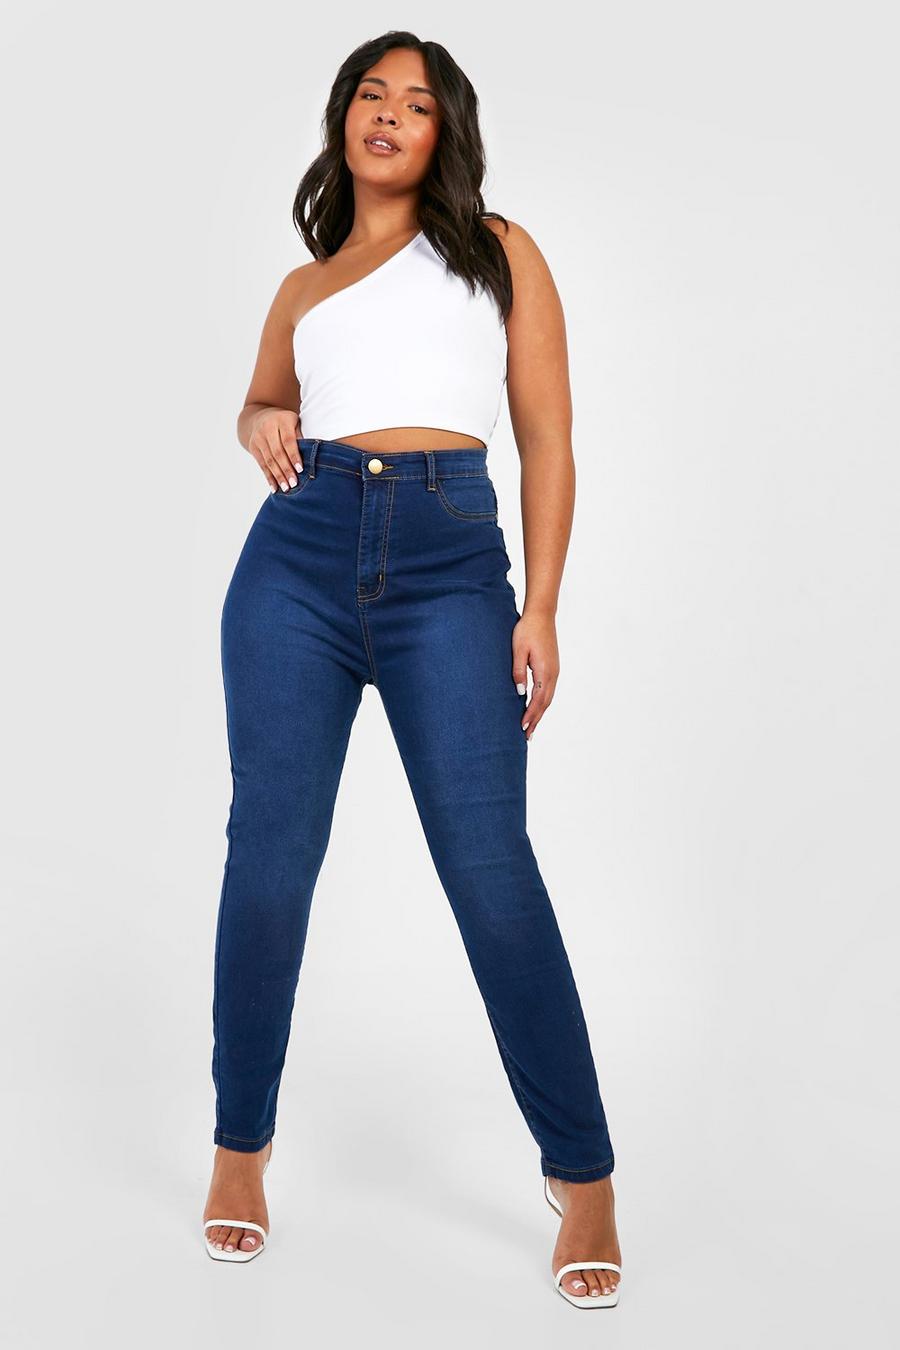 טייץ ג'ינס כחול אמיתי high rise מידות גדולות